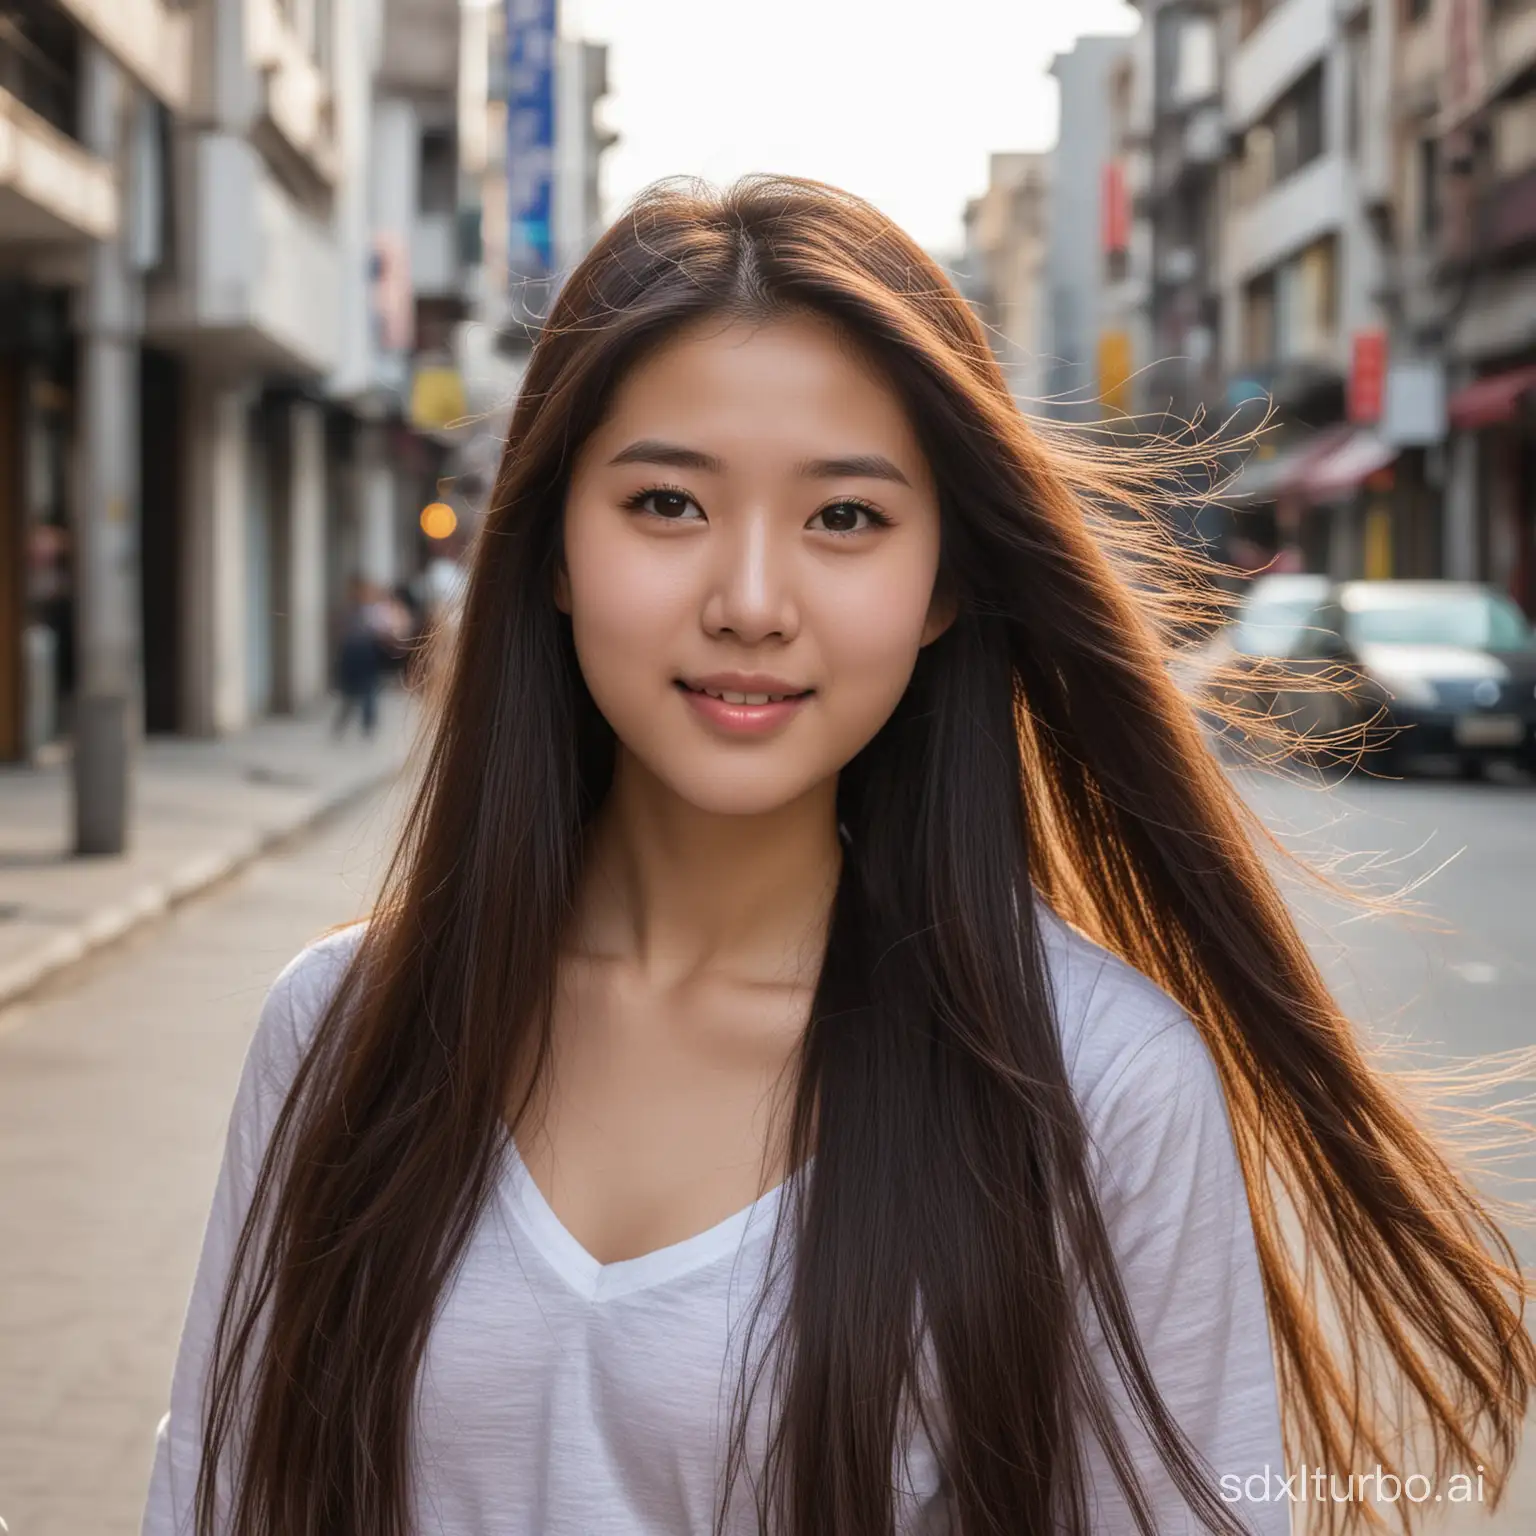 中国女孩，18岁，身材丰满，美丽，长发飘飘，站在街上含情脉脉看着镜头，半身镜头